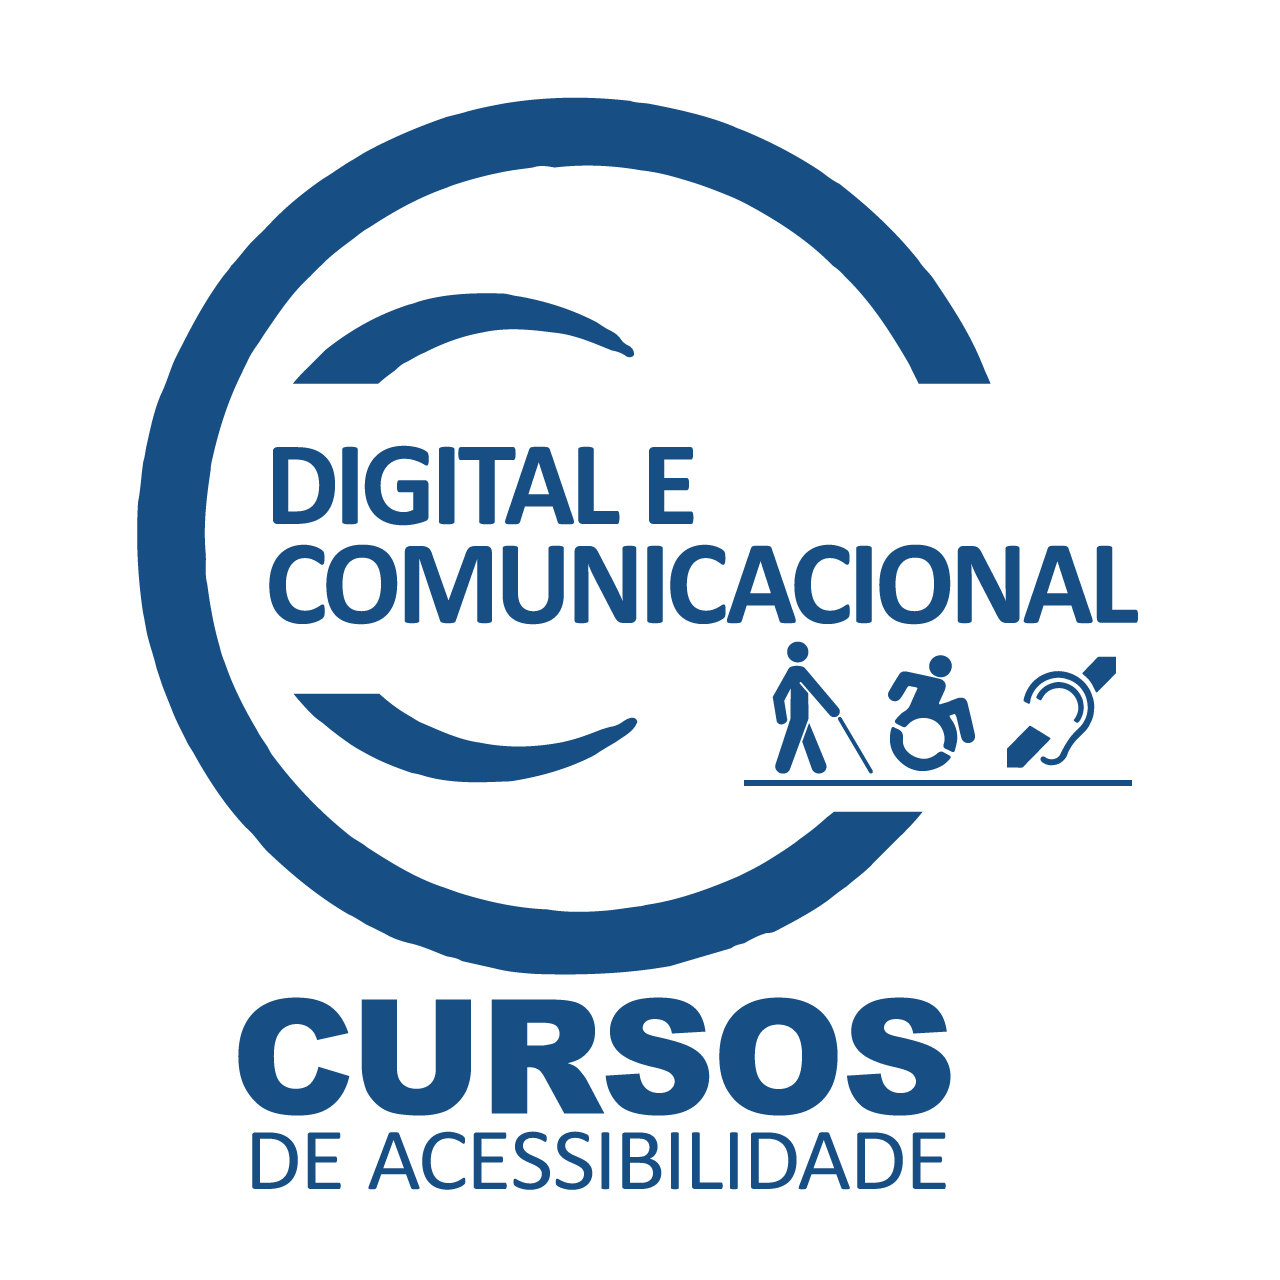 fundo branco com a ilustração do logotipo do Curso de Acessibilidade Digital e Comunicacional com símbolos de acessibilidade dentro de um círculo na cor azul escuro. 